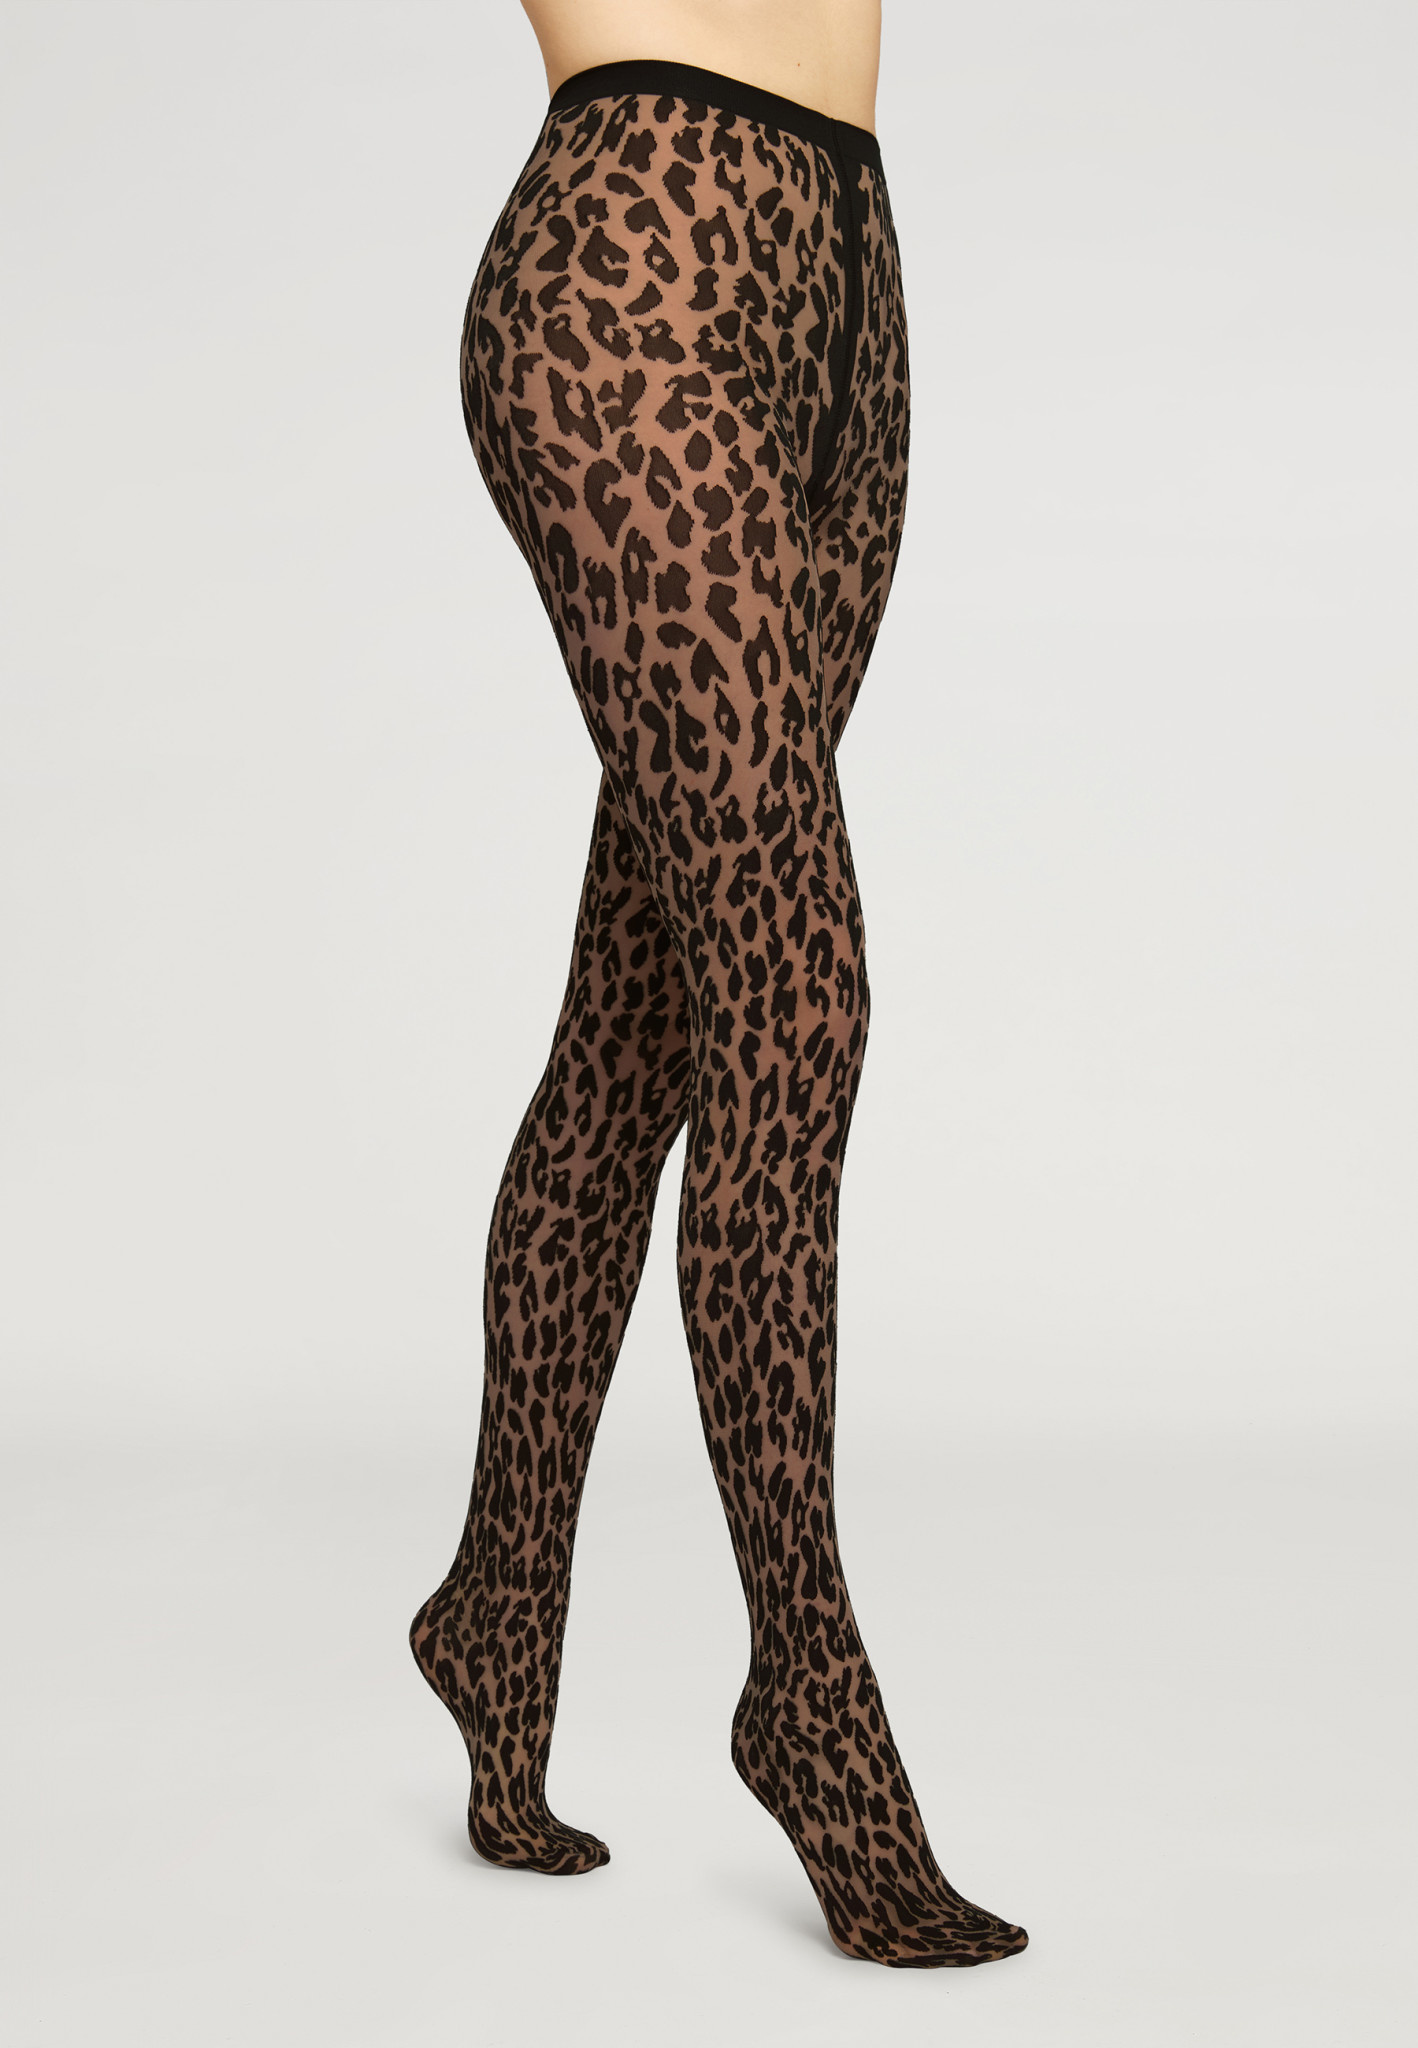 Jockey Women's Mid Rise Full Length Leopard Print White/Gray Leggings Size  M NWT